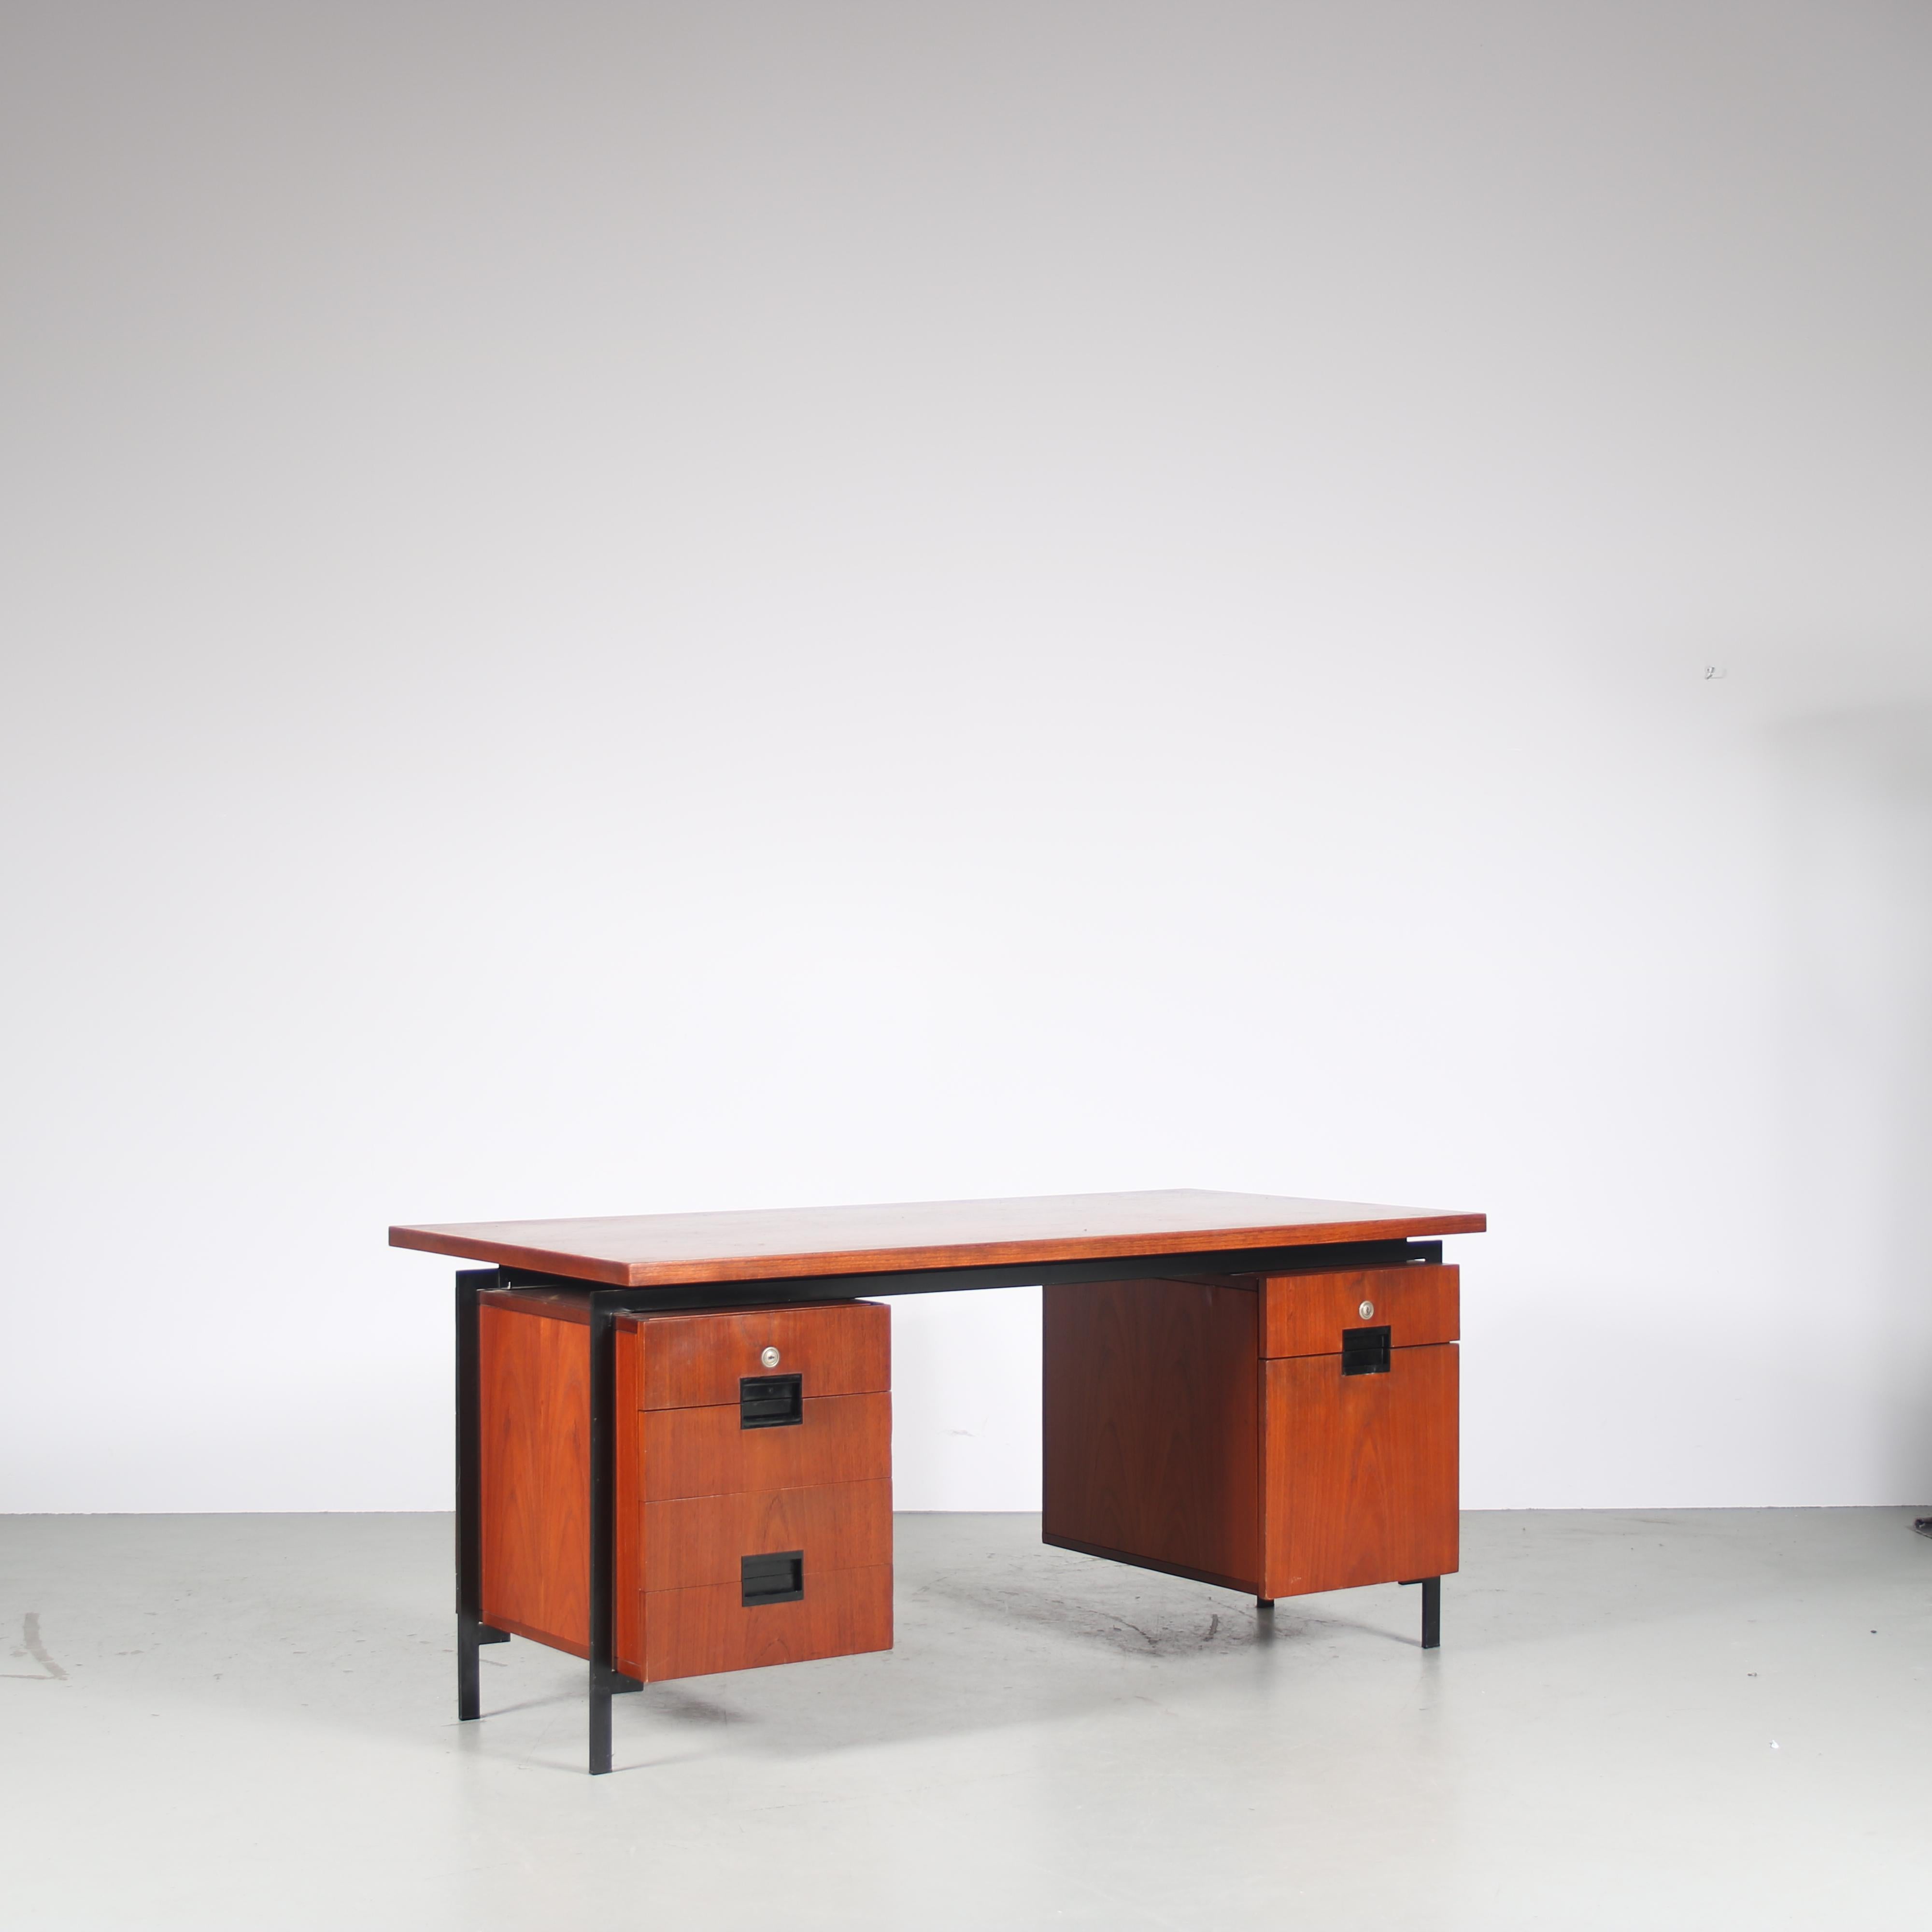 Ein schöner holländischer Design-Schreibtisch aus der begehrten japanischen Serie, entworfen von Cees Braakman, hergestellt von Pastoe in den Niederlanden, um 1960.

Dieser atemberaubende Schreibtisch ist aus hochwertigem Teakholz gefertigt und